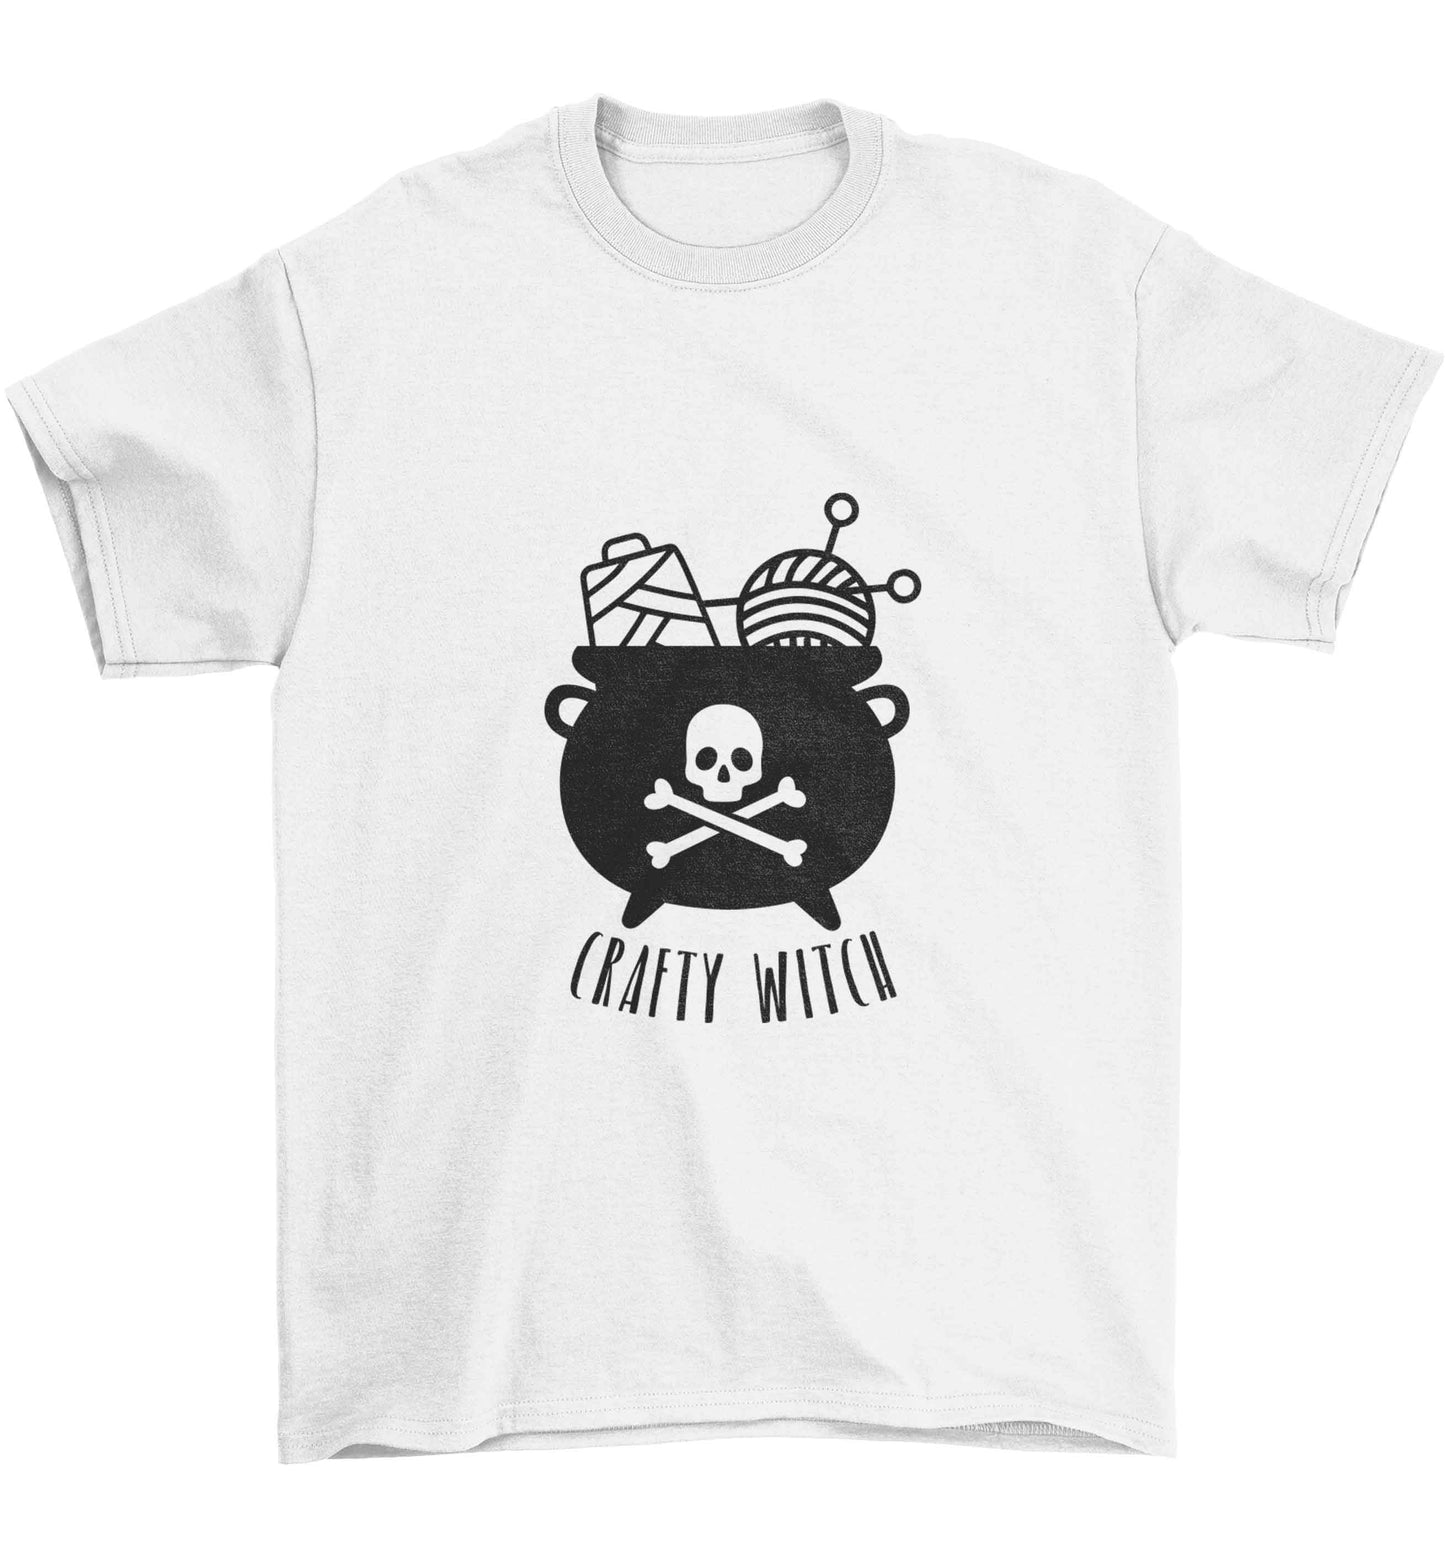 Crafty witch Children's white Tshirt 12-13 Years